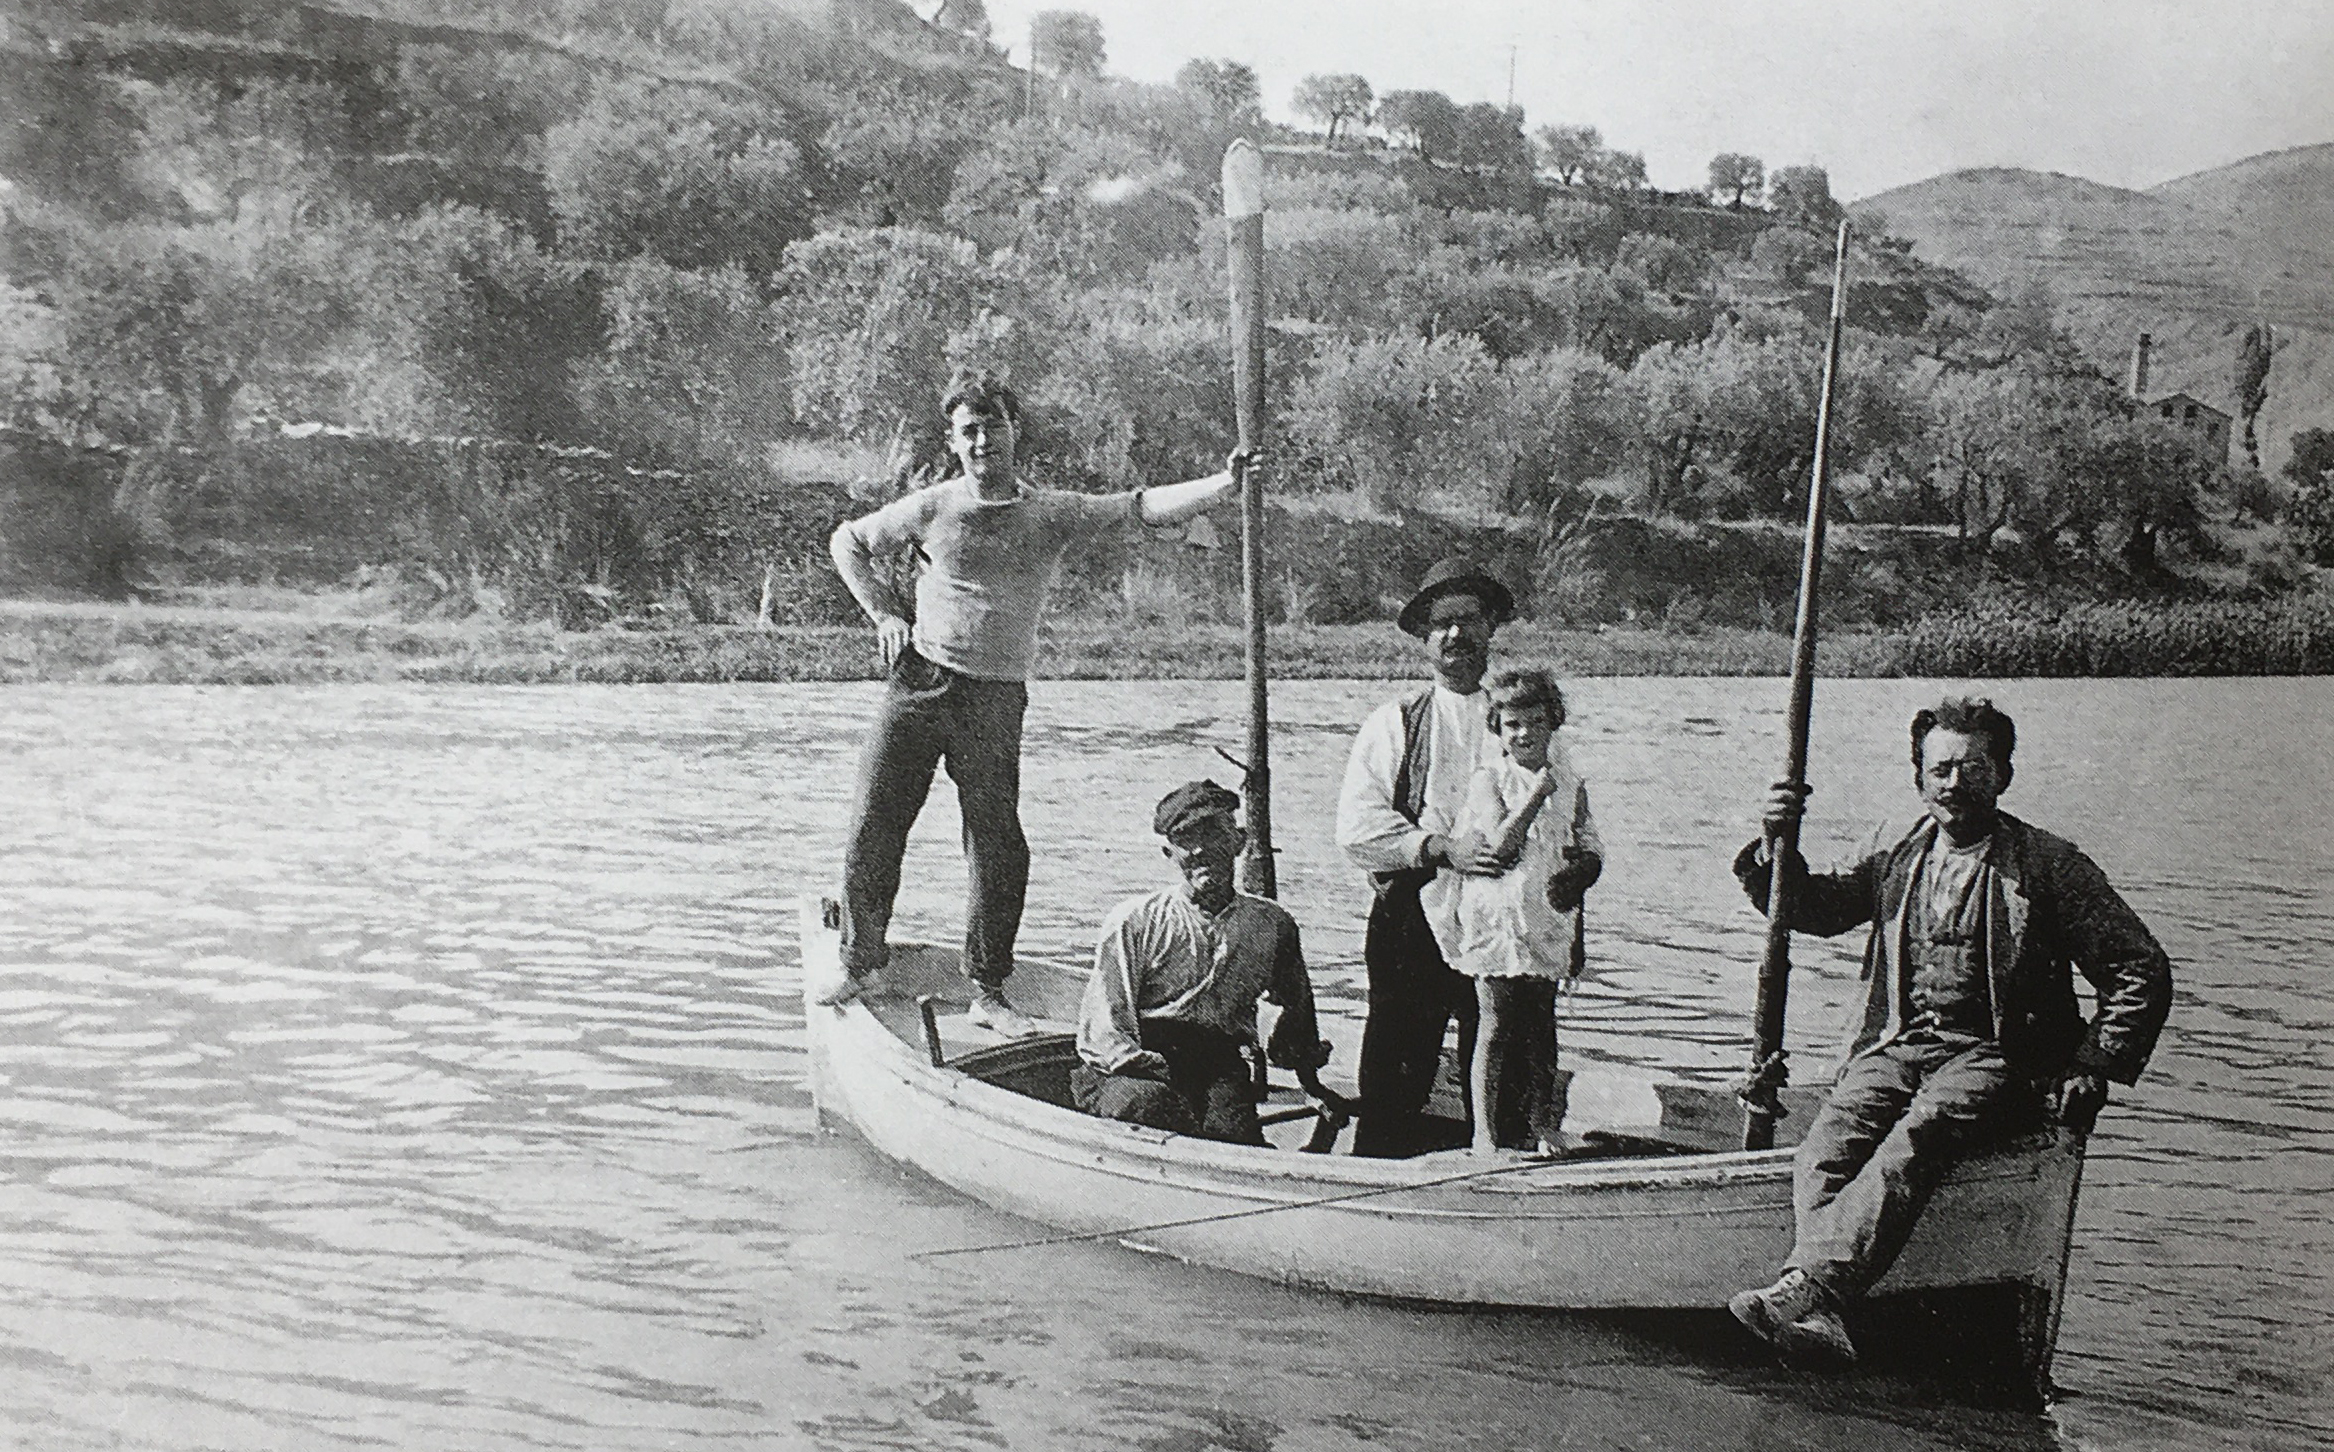 La barca de Josep Sibila, conegut popularment com el Castilla, que feia petites navegacions recreatives pel riu en les primeres dÃ¨cades del segle XX (foto publicada en el llibre 'SÃºria. Els records d'Ãºn poble' de Josep Juncadella Masana).